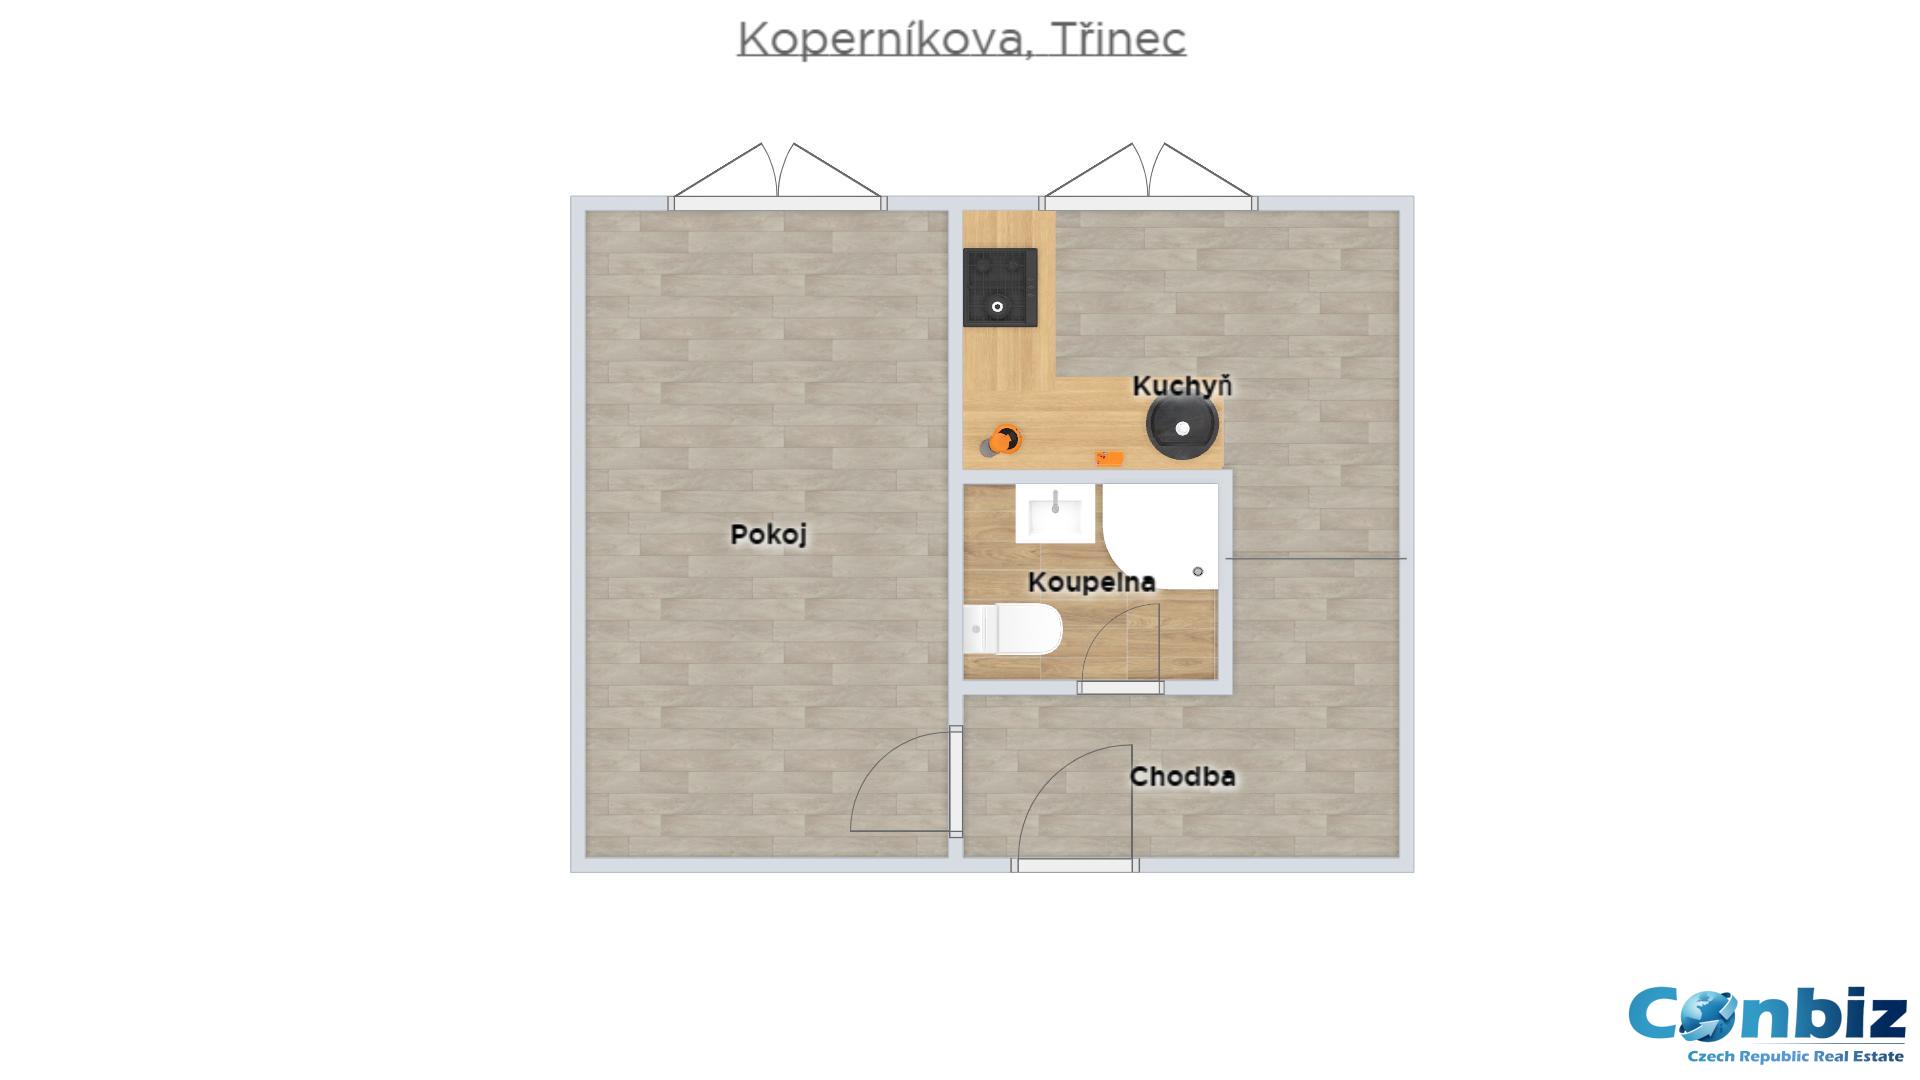 Prodej družstevního bytu 1+1 na ulici Kopernikova v Třinci , obrázek č. 3